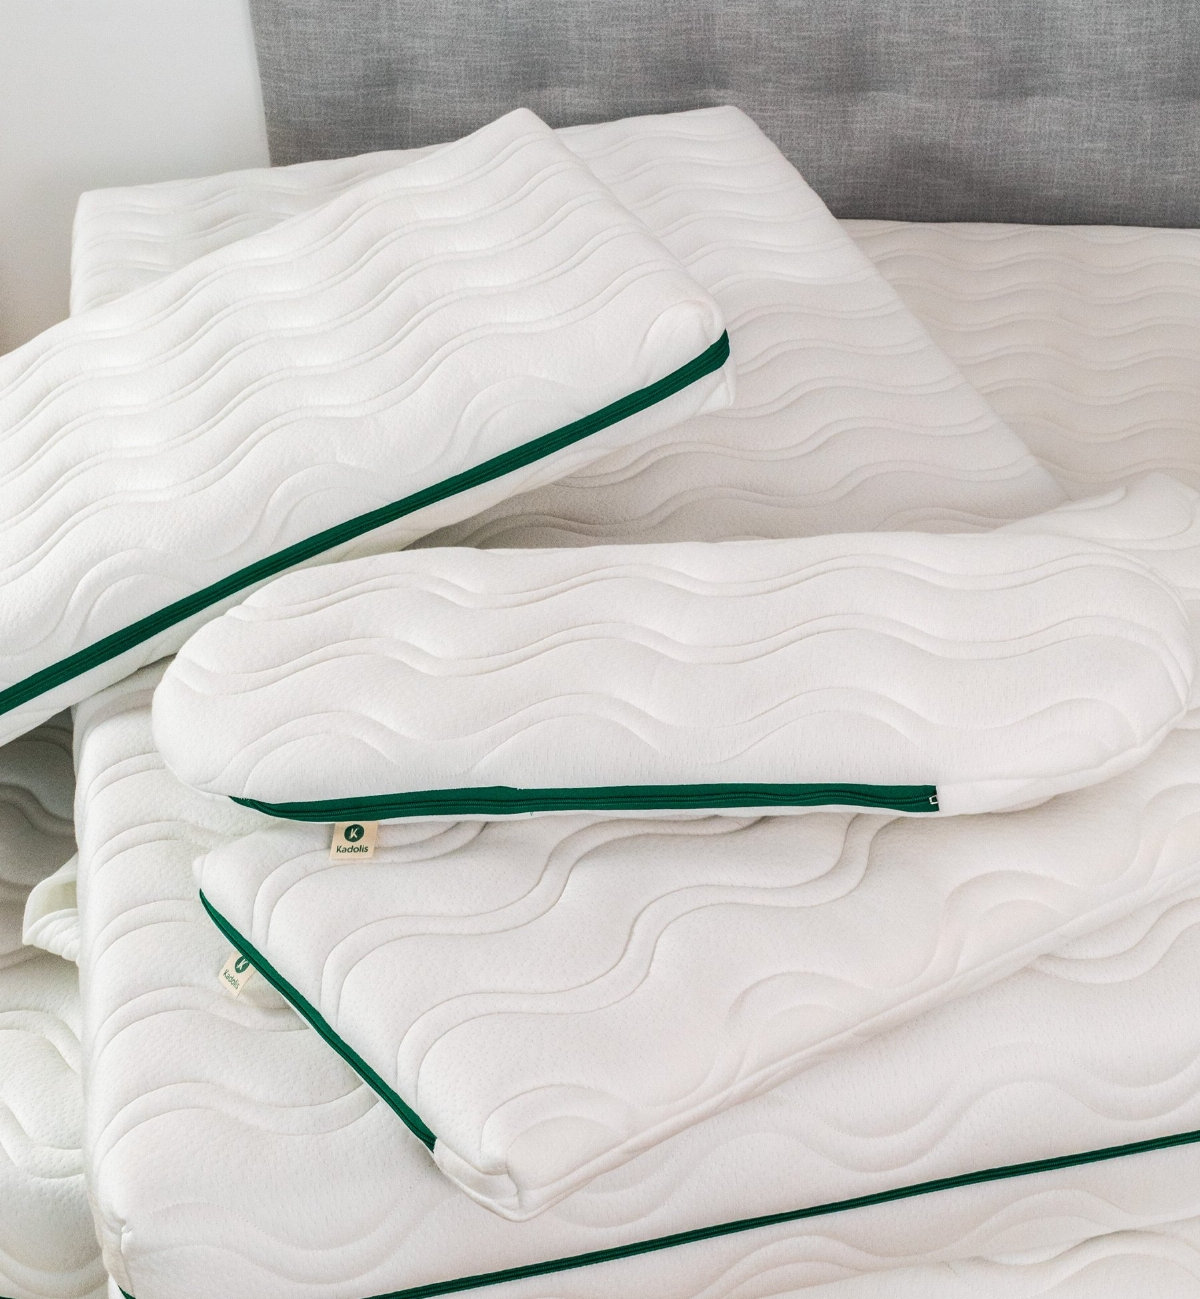 Aloenatura® natural and responsible baby bed mattress